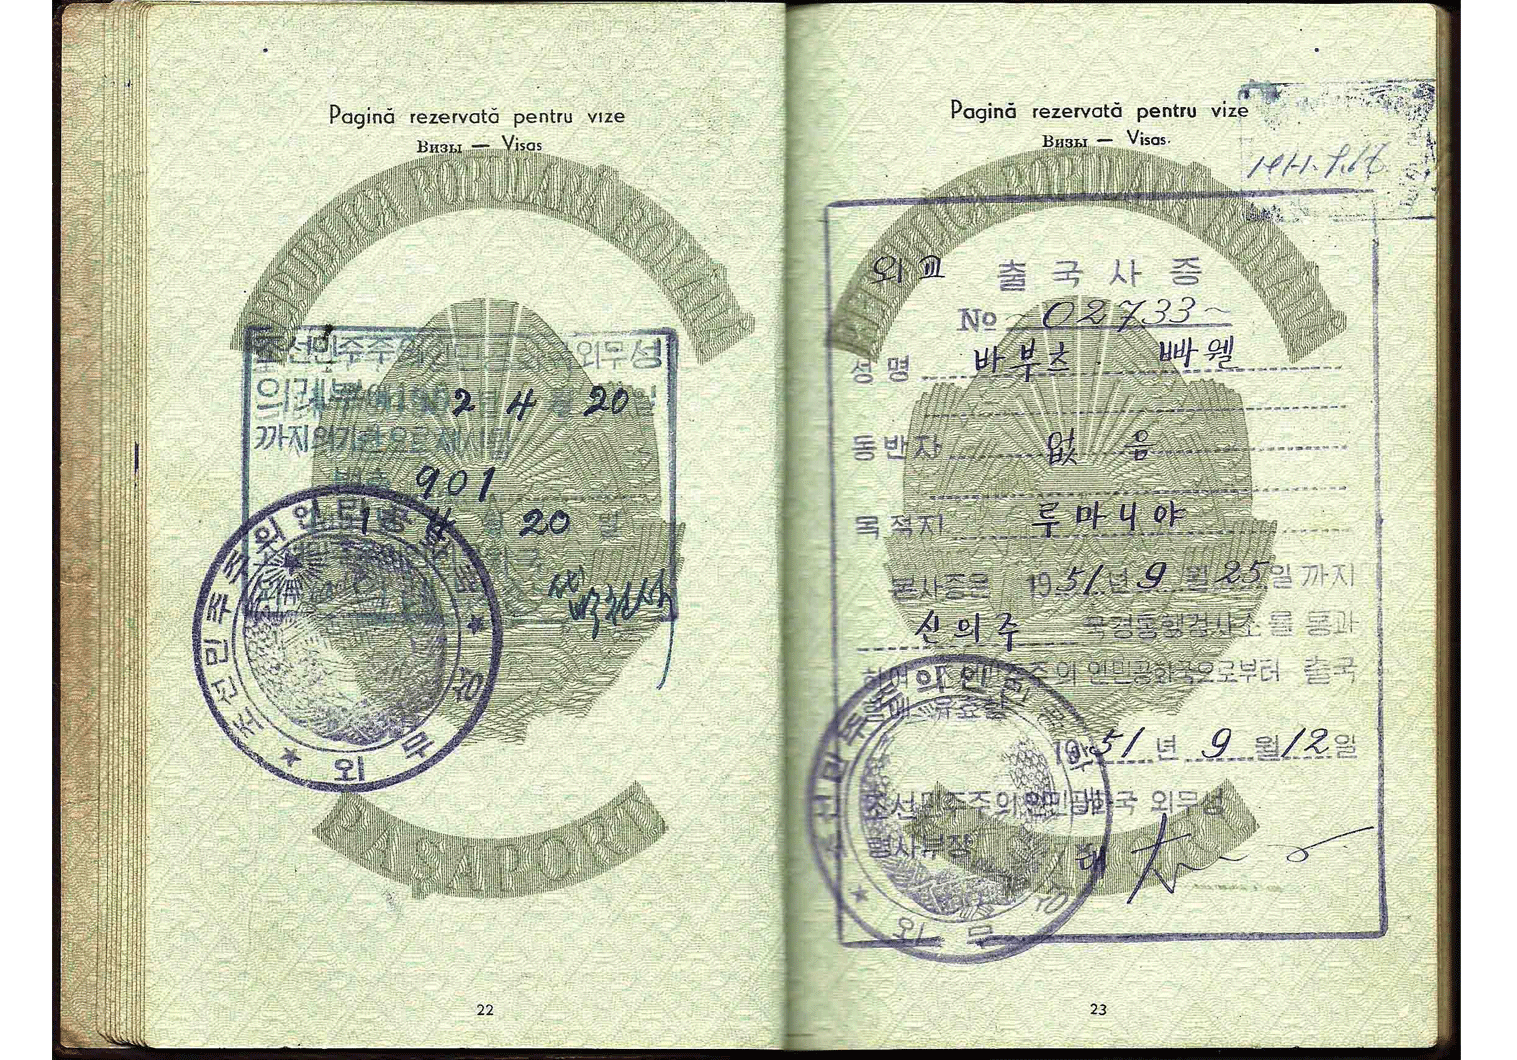 1951 North Korean diplomatic visa inside a passport